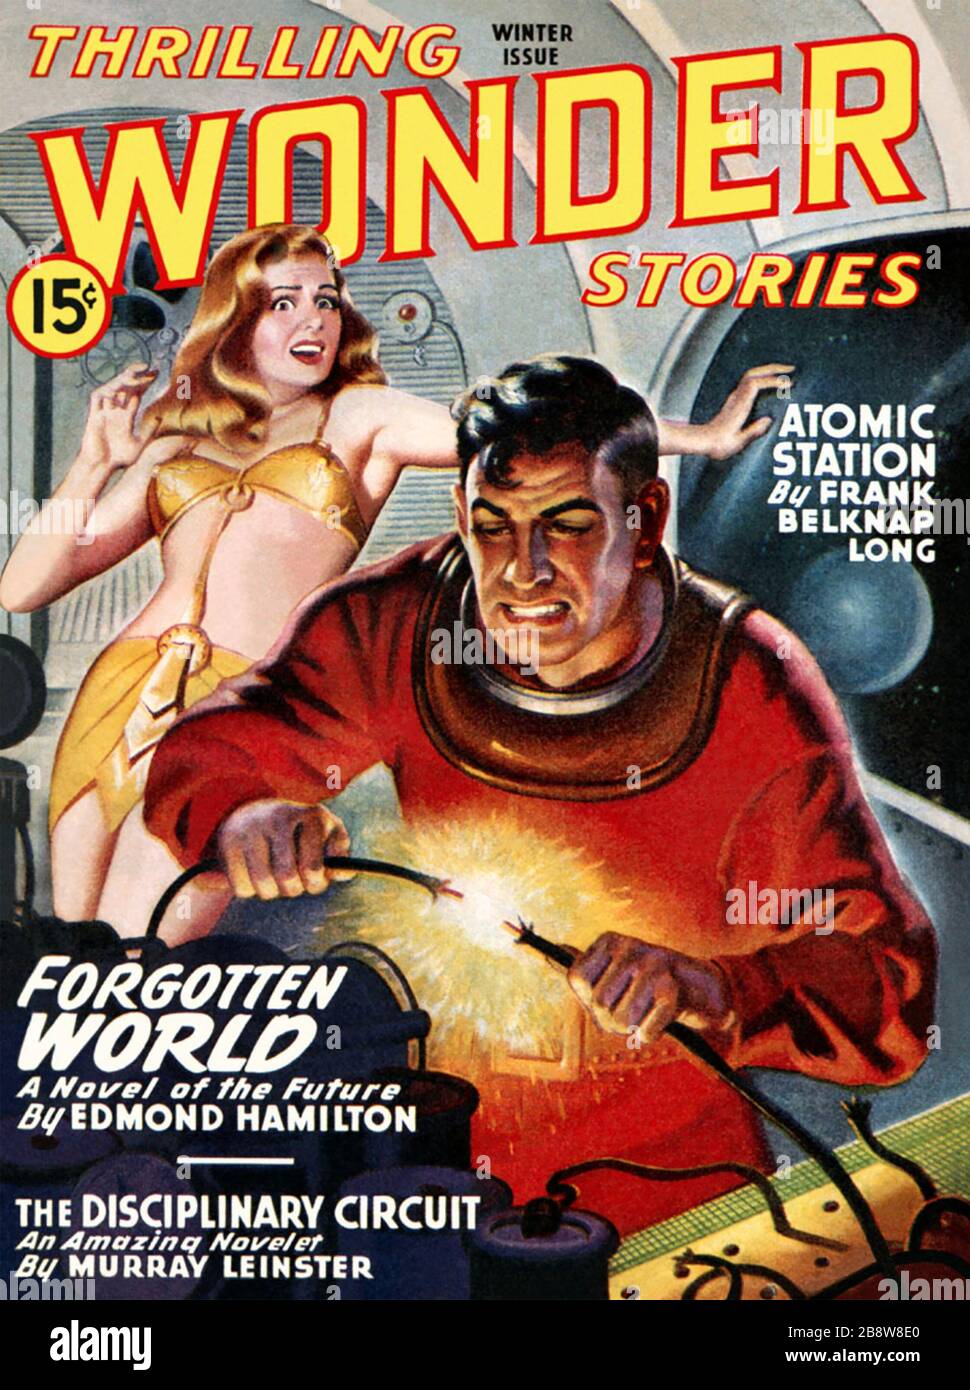 JE ME DEMANDE DES HISTOIRES sur le magazine américain Sci-fi en 1950 Banque D'Images